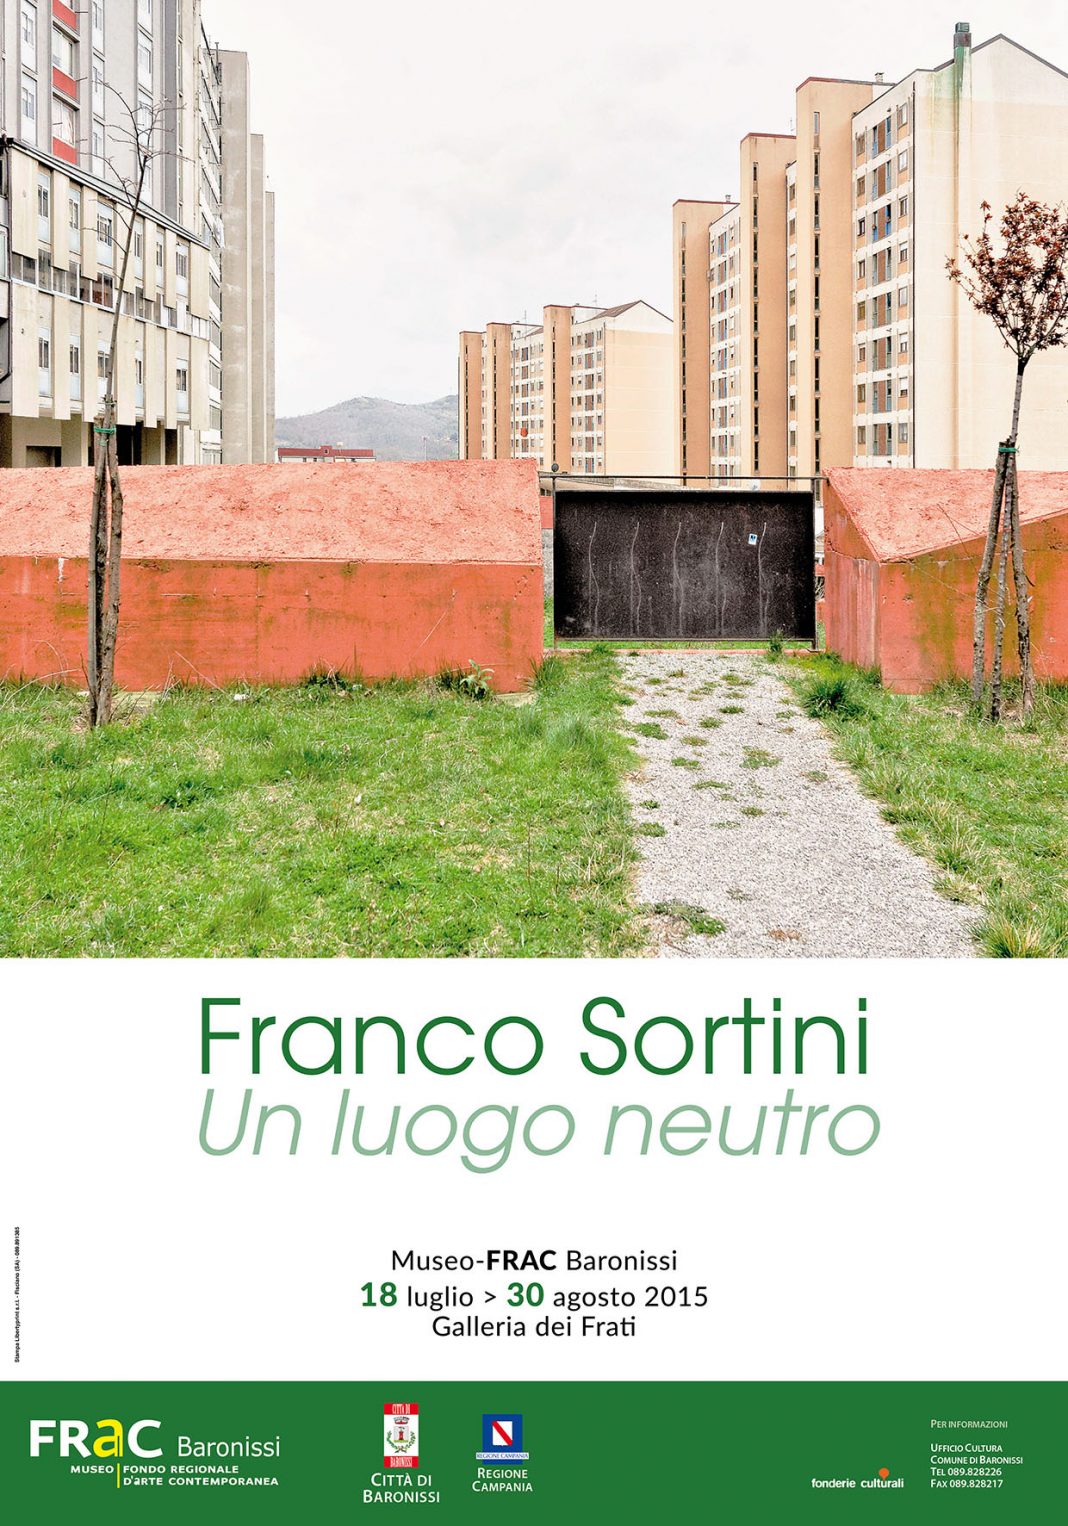 Franco Sortini – Un luogo neutrohttps://www.exibart.com/repository/media/eventi/2015/07/franco-sortini-8211-un-luogo-neutro-2-1068x1526.jpg